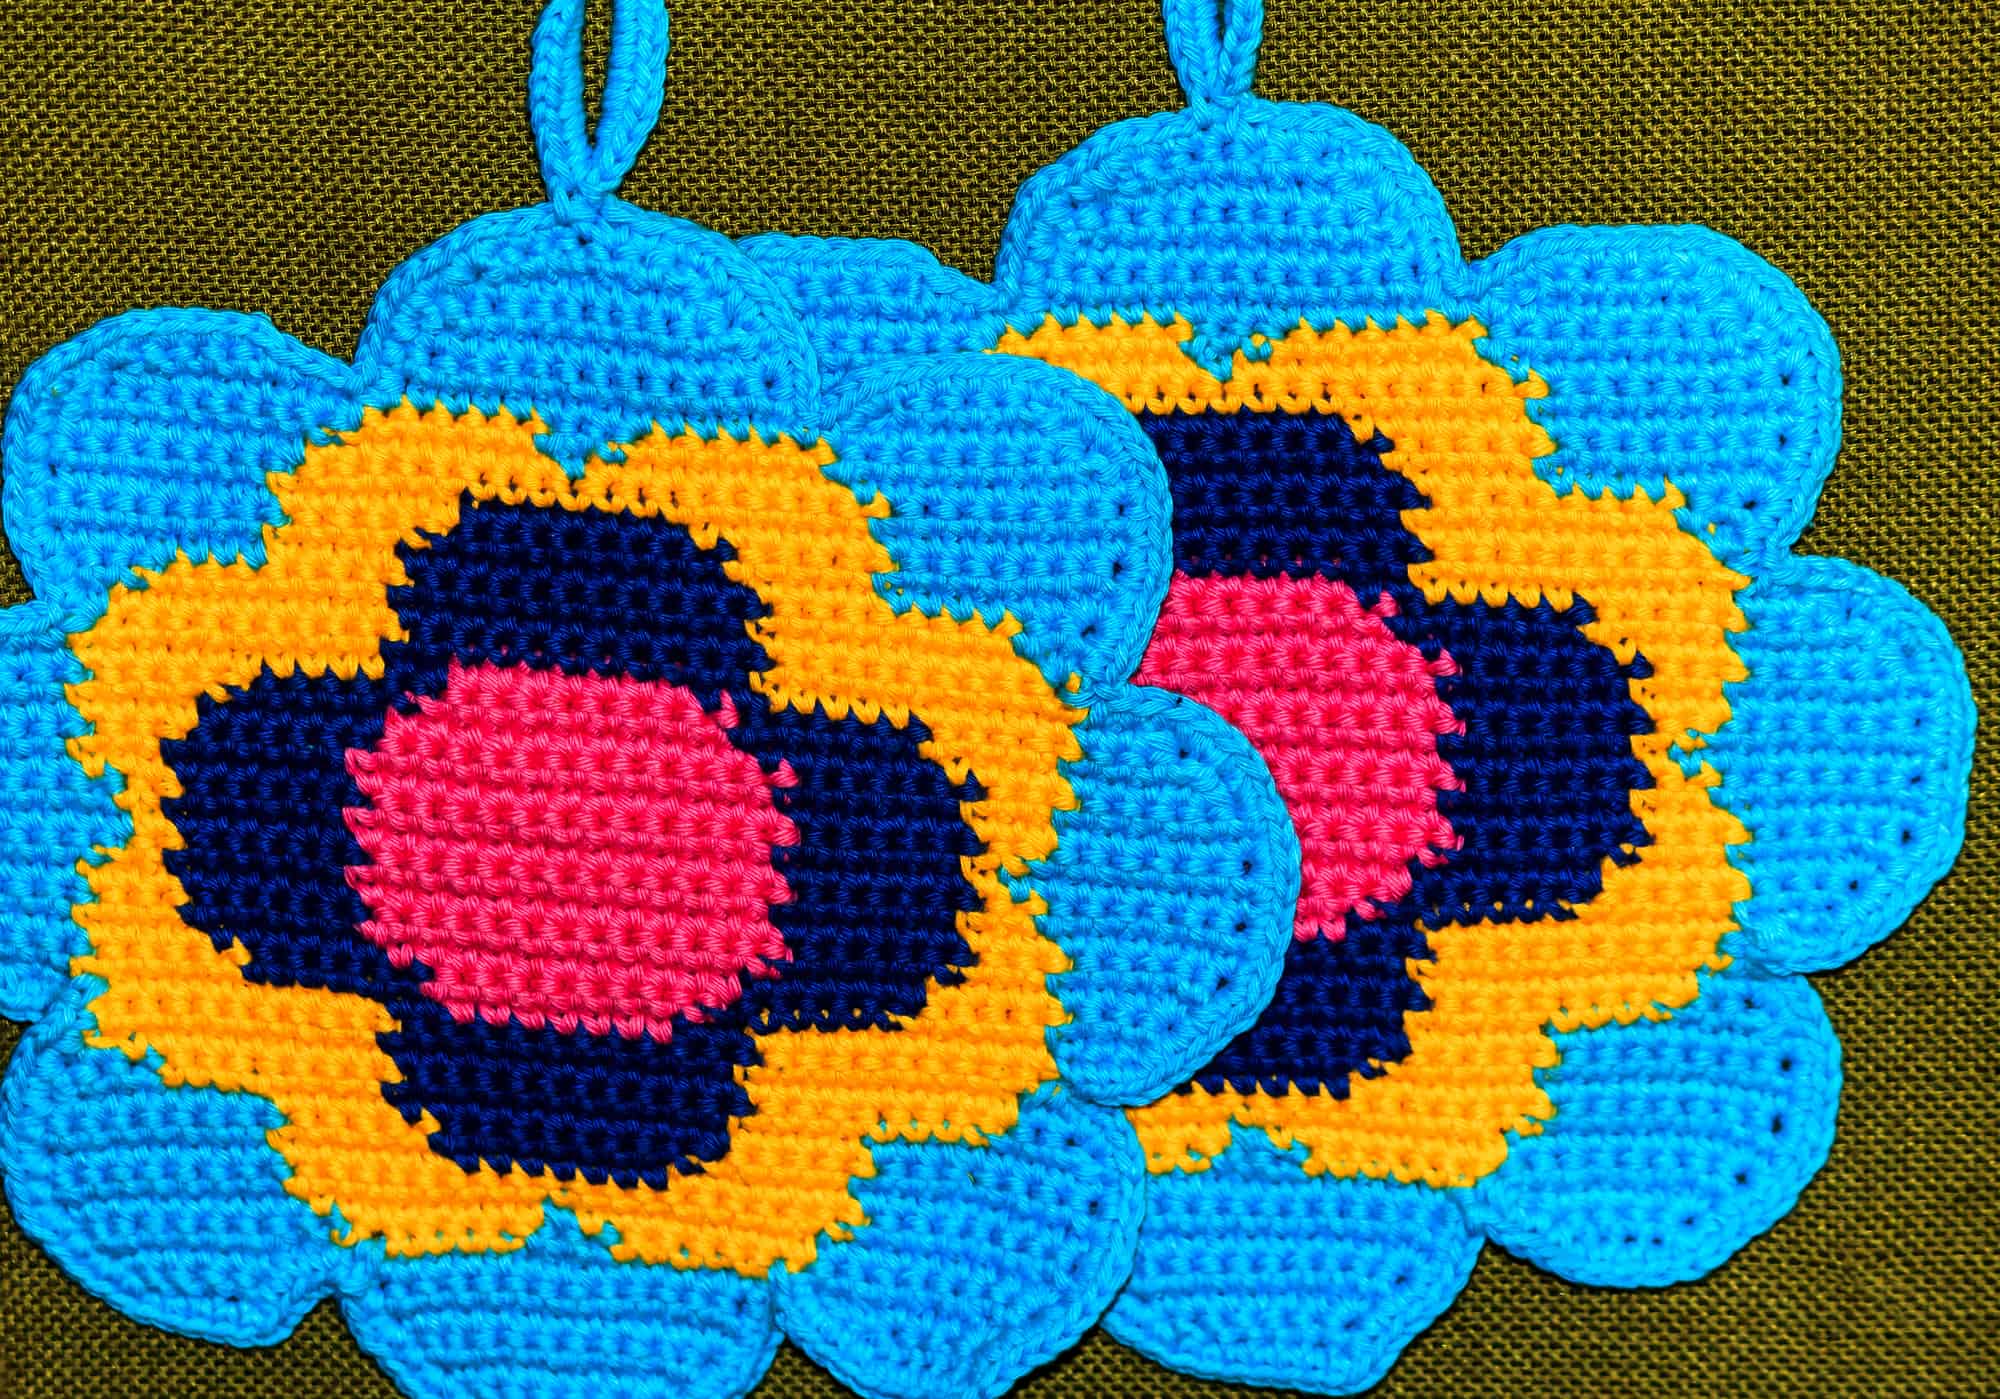 Crochet potholder, colorful flower 